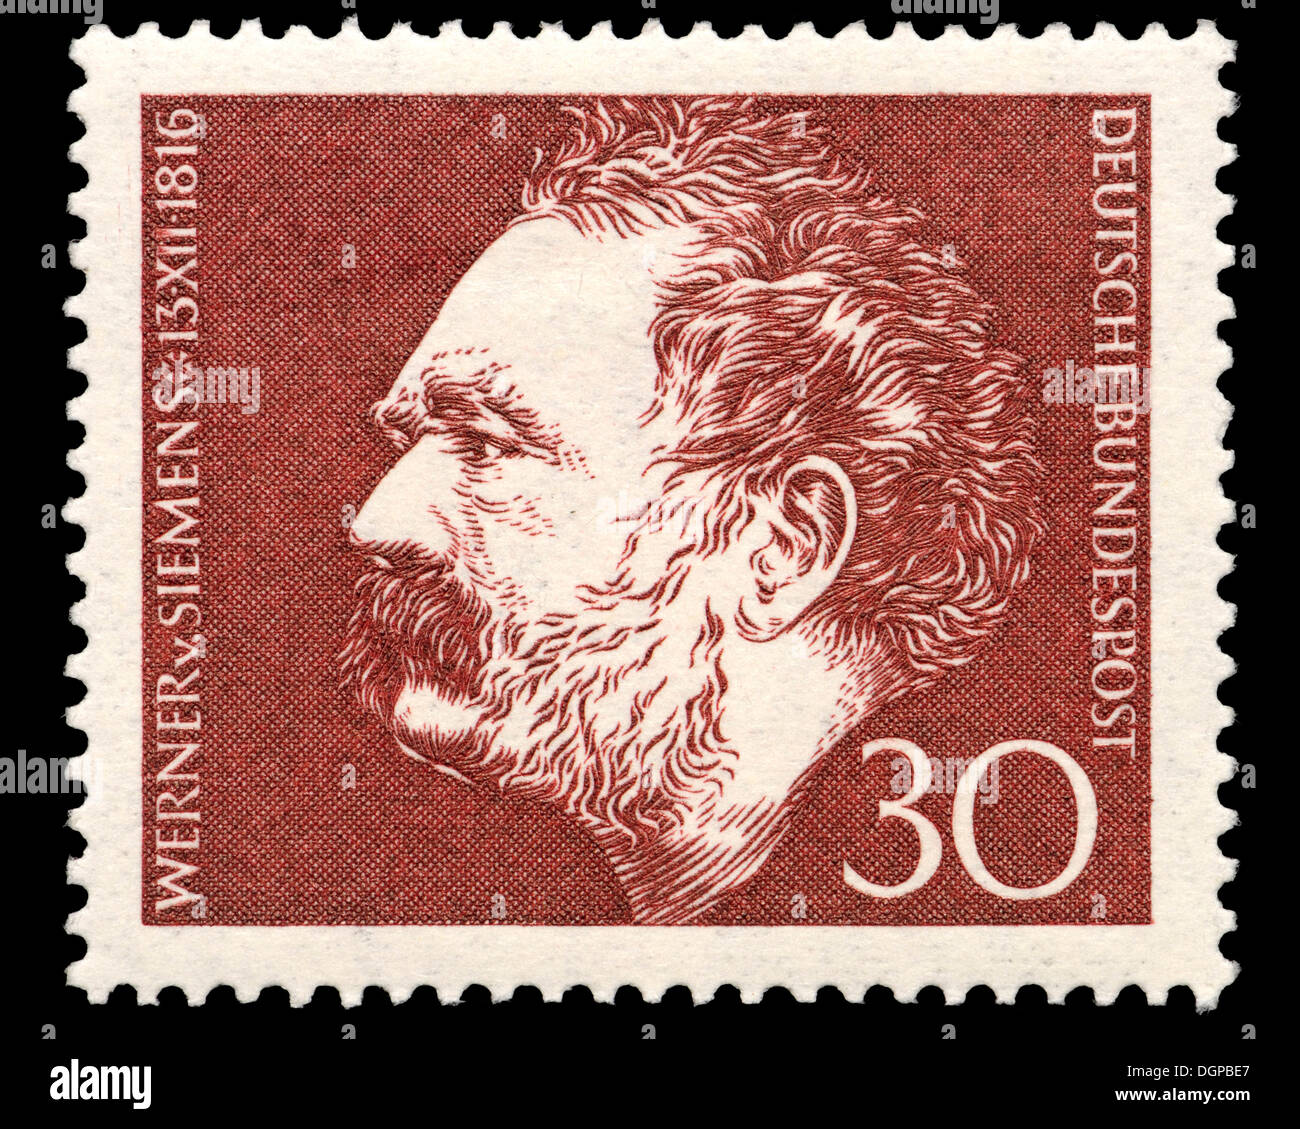 Timbre allemand - Ernst Werner von Siemens (1816 - 1892), inventeur et industriel allemand Banque D'Images